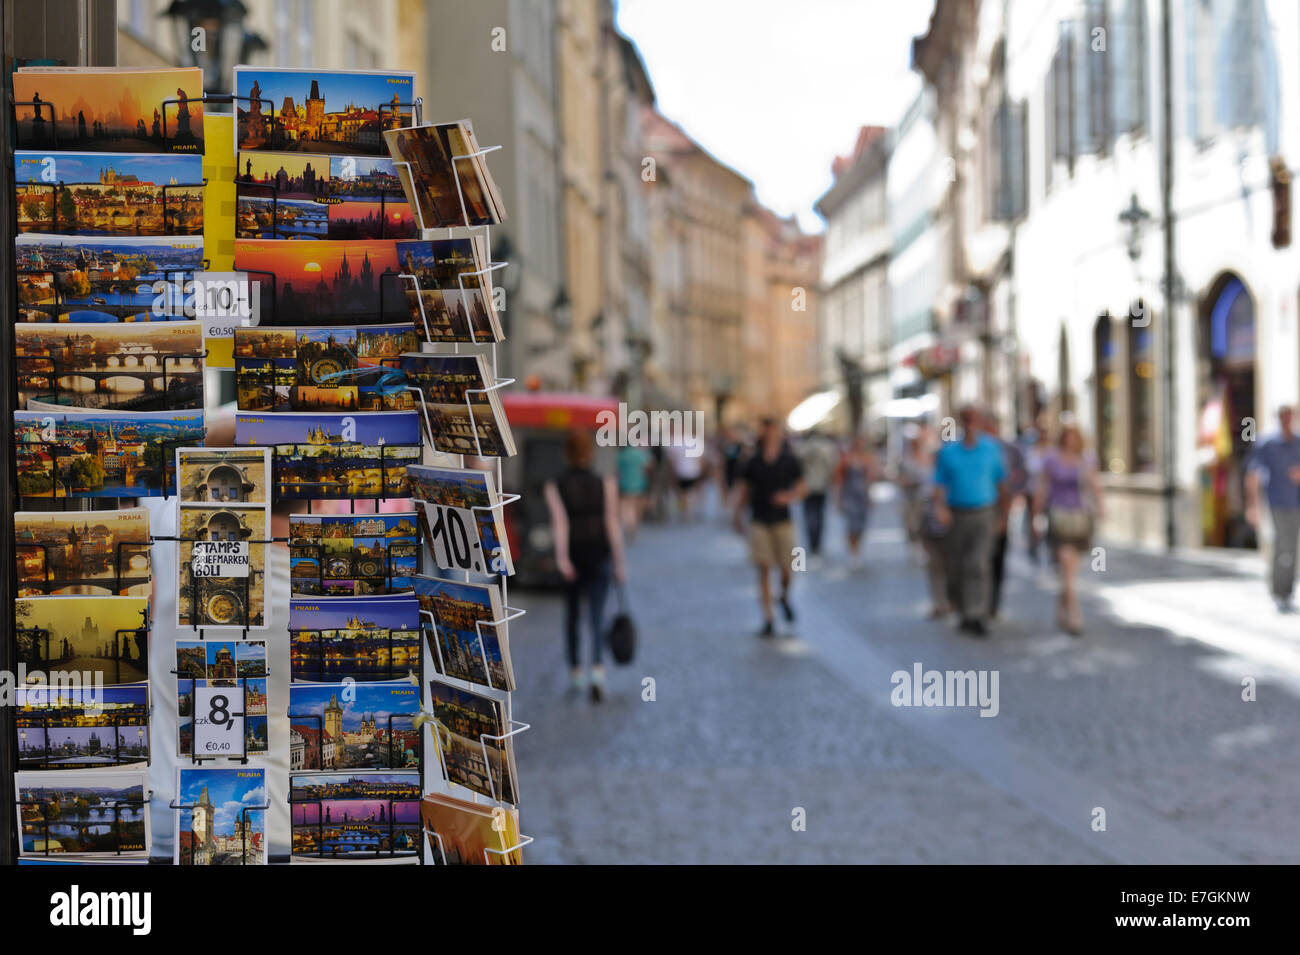 Cartoline colorate di Praga in vendita su una trafficata strada turistica, Praga, Repubblica Ceca. Foto Stock